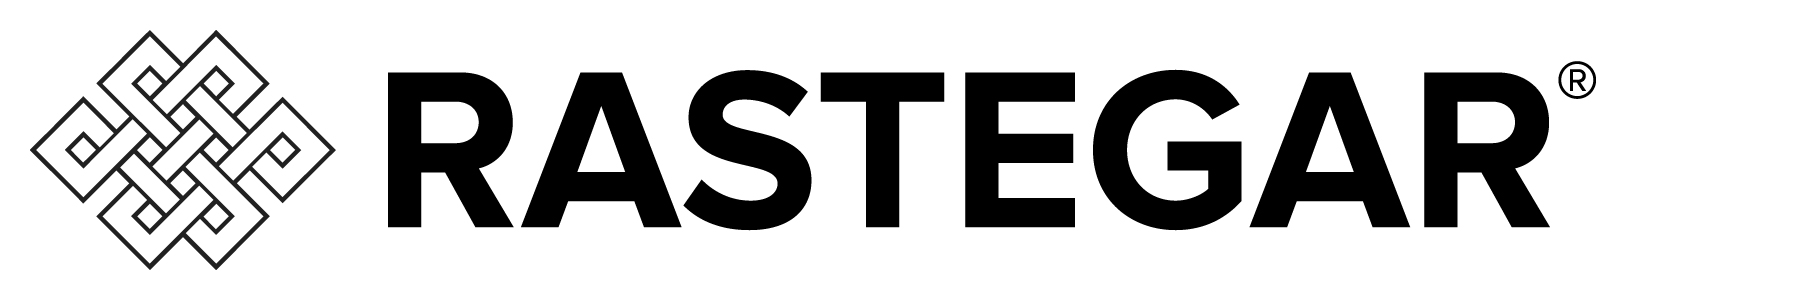 Rastegar Logo 1.jpg